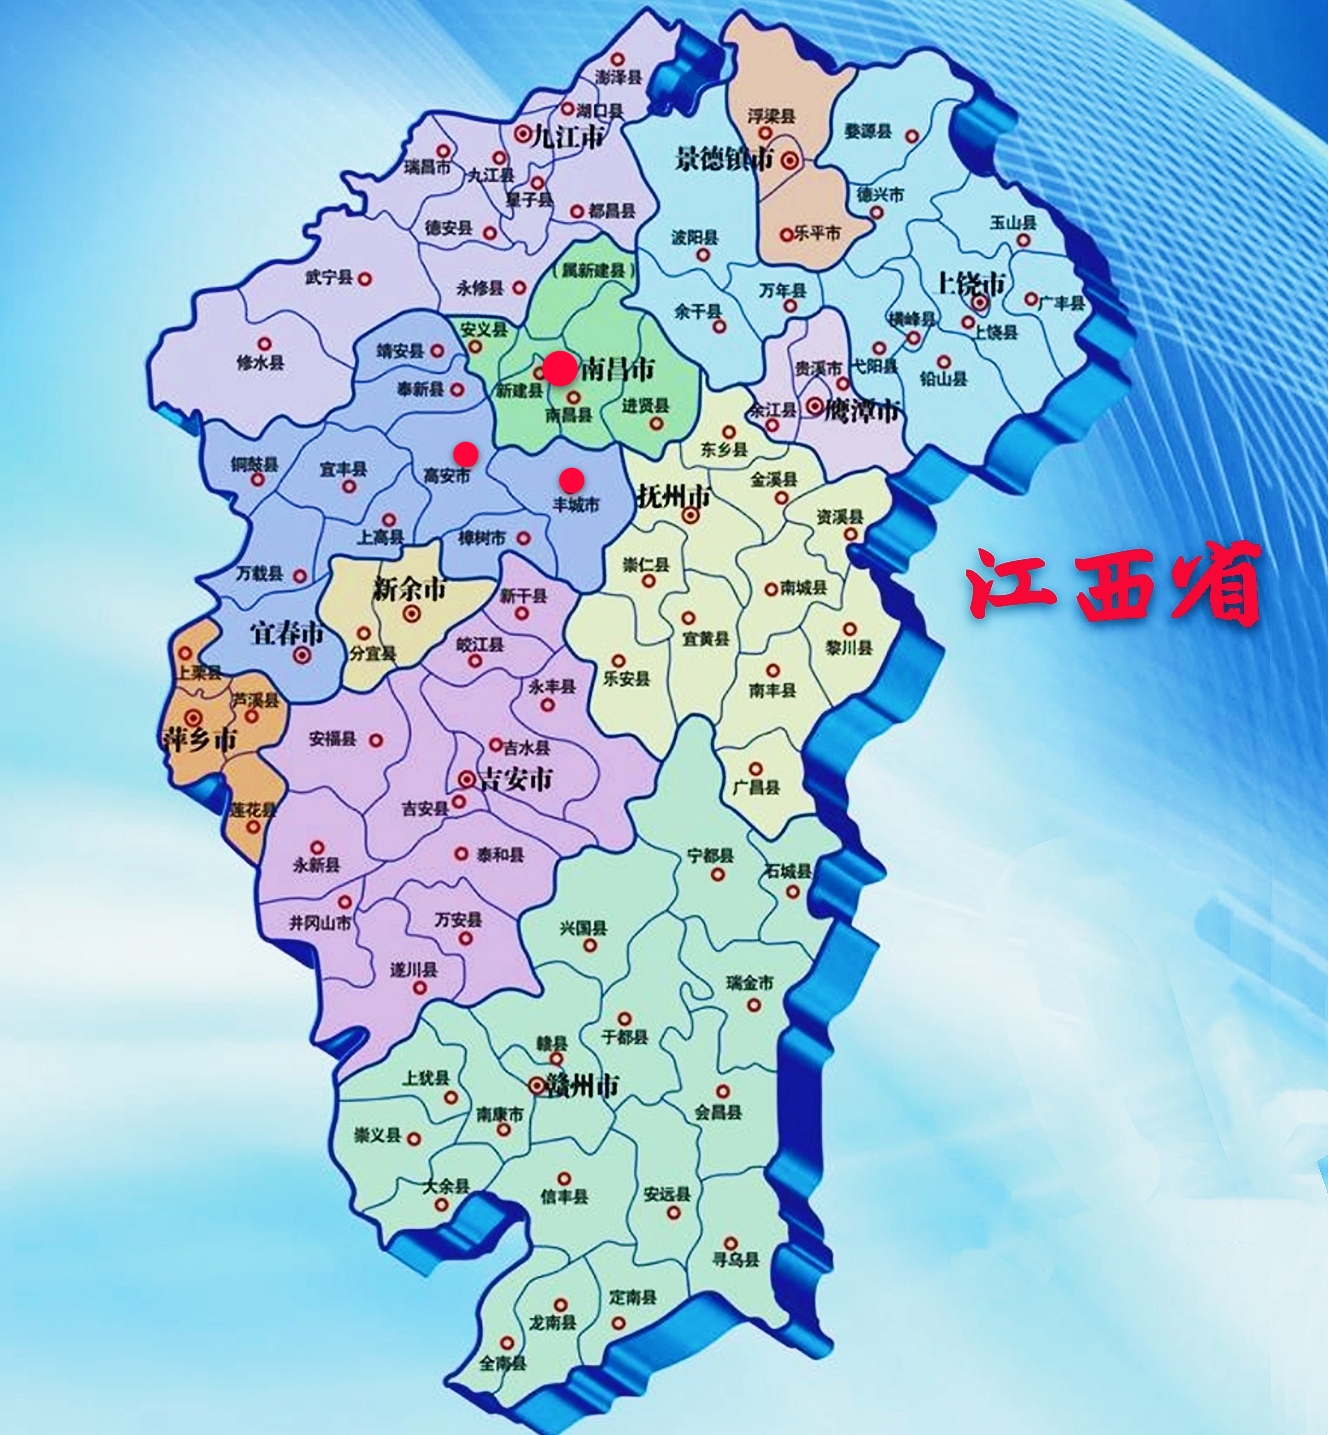 南昌是中部省份江西的省会城市,面积约7400平方公里,18年常住人口554